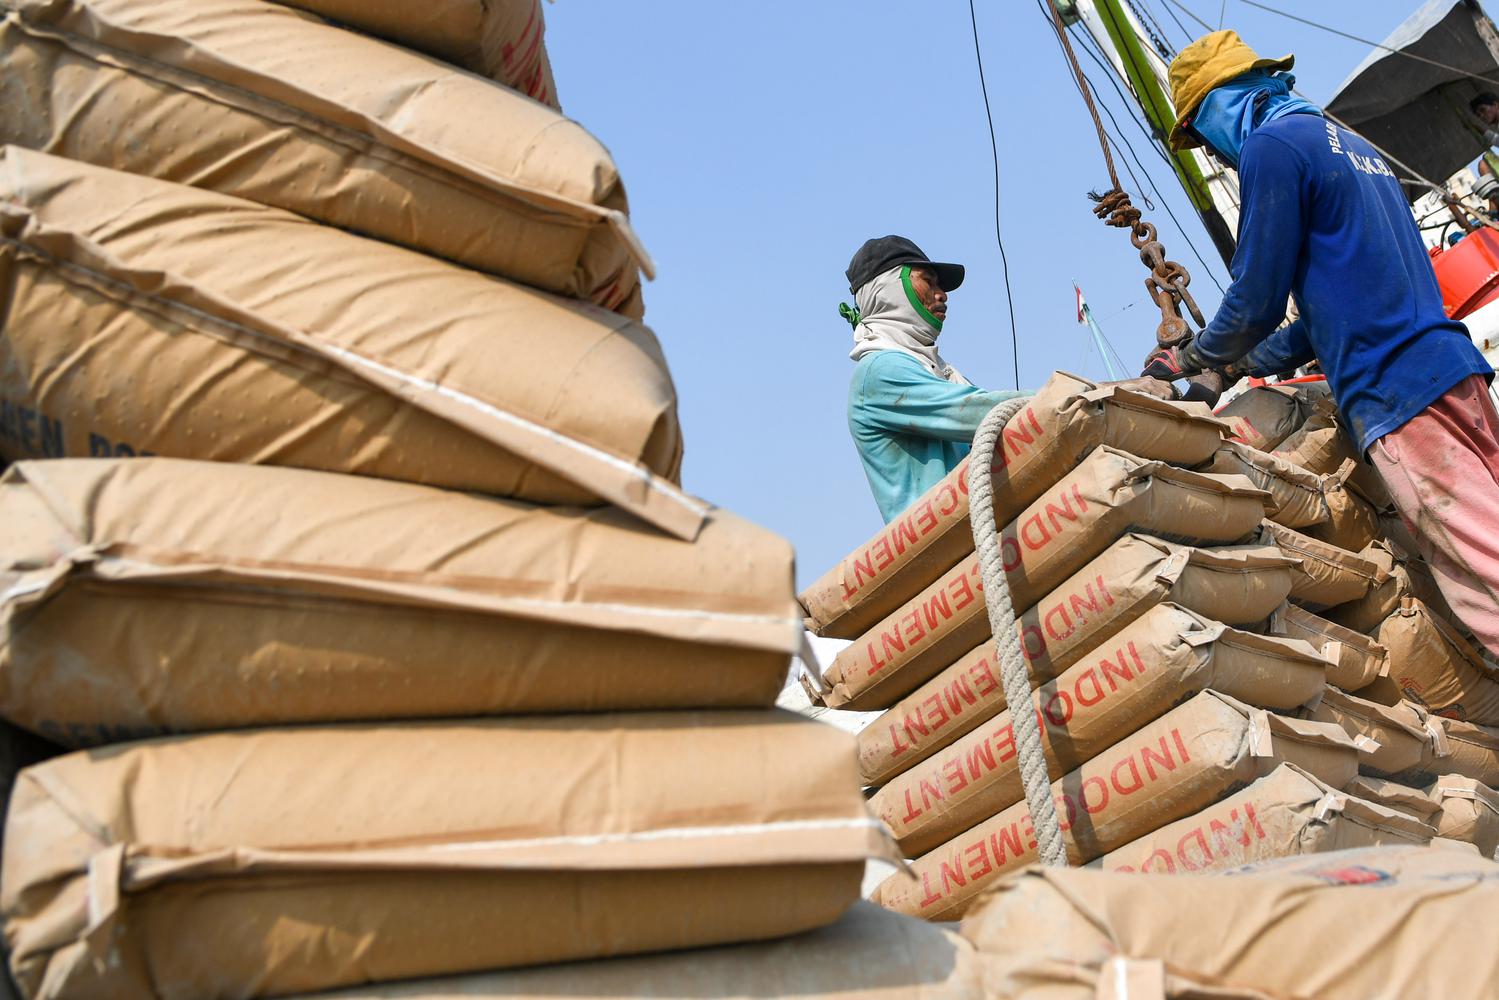 Pekerja melakukan aktivitas bongkar muat semen di Pelabuhan Sunda Kelapa, Jakarta, Jumat (25/10/2019). Menurut Asosiasi Semen Indonesia (ASI), volume penjualan semen sampai Agustus 2019 ini tercatat sebanyak 42,03 juta ton atau turun 2,26% dibandingkan pe